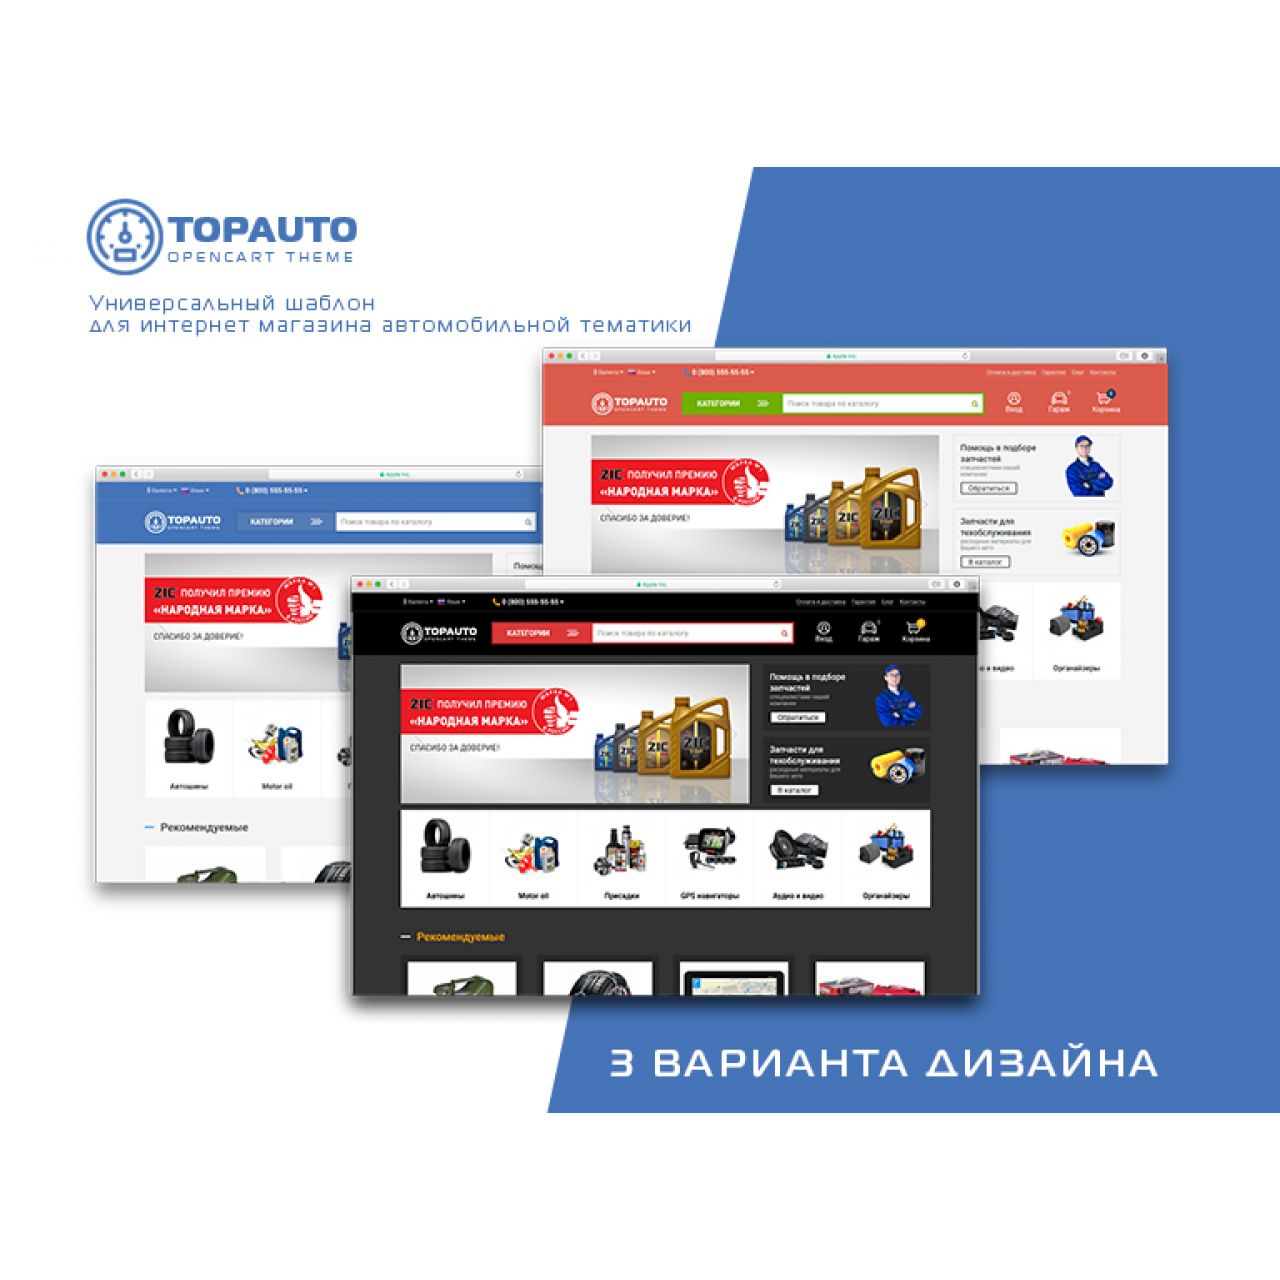  TopAuto - адаптивный шаблон интернет магазина автозапчастей и автотоваров из категории Шаблоны для CMS OpenCart (ОпенКарт)